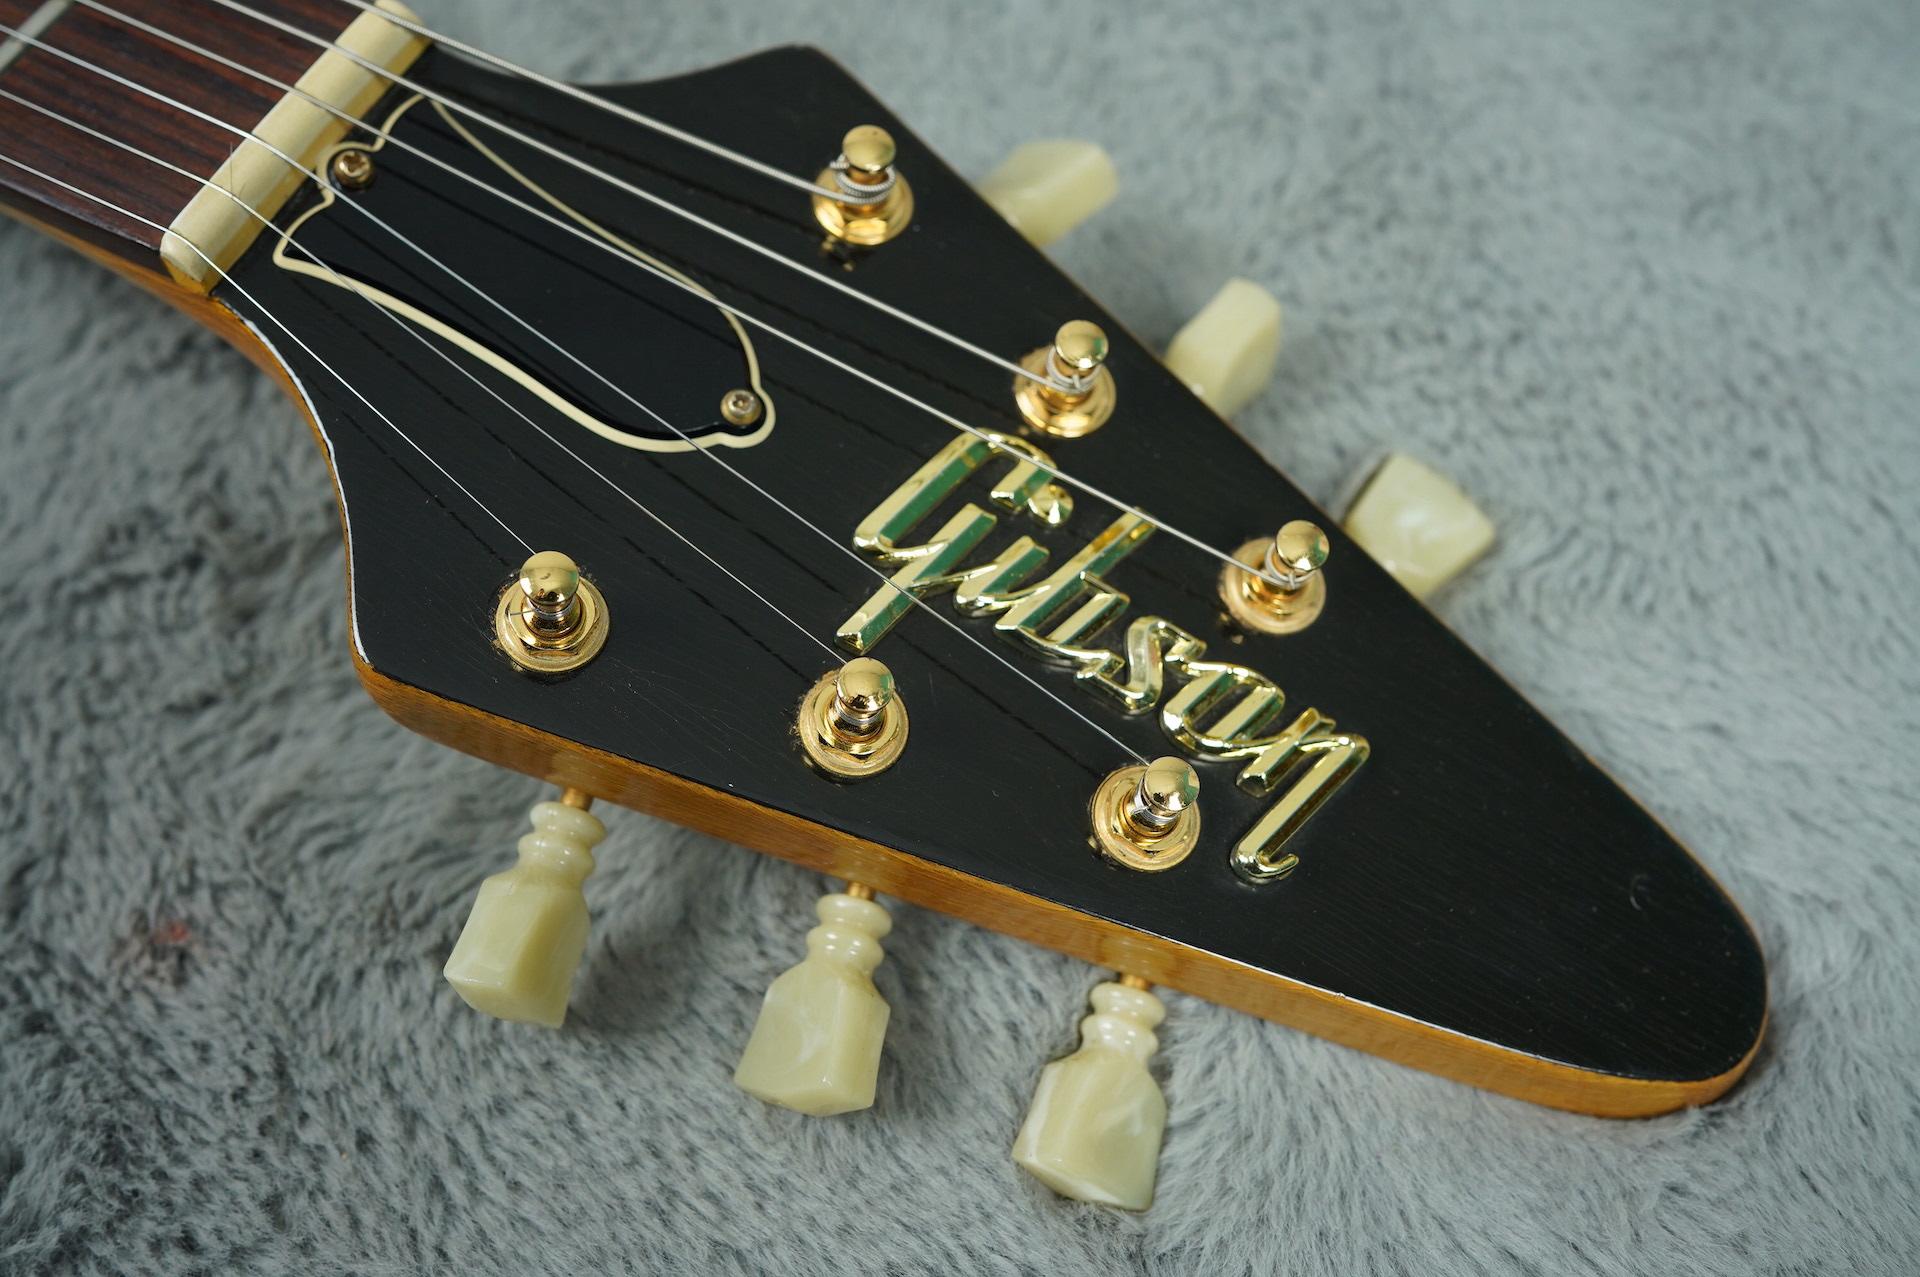 1982 Gibson Flying V